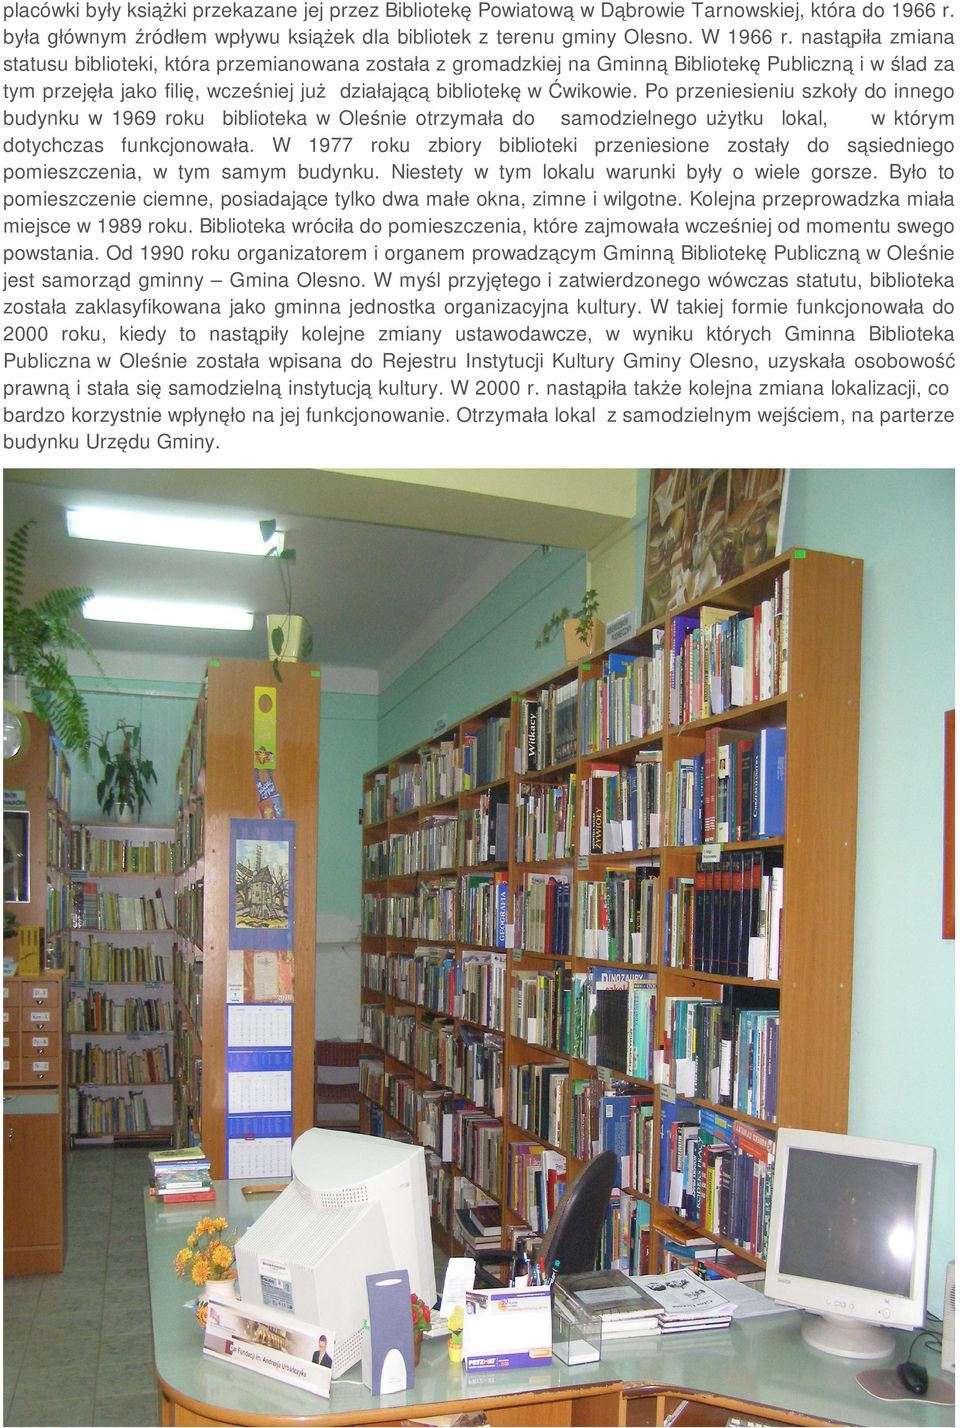 Po przeniesieniu szkoły do innego budynku w 1969 roku biblioteka w Oleśnie otrzymała do samodzielnego użytku lokal, w którym dotychczas funkcjonowała.